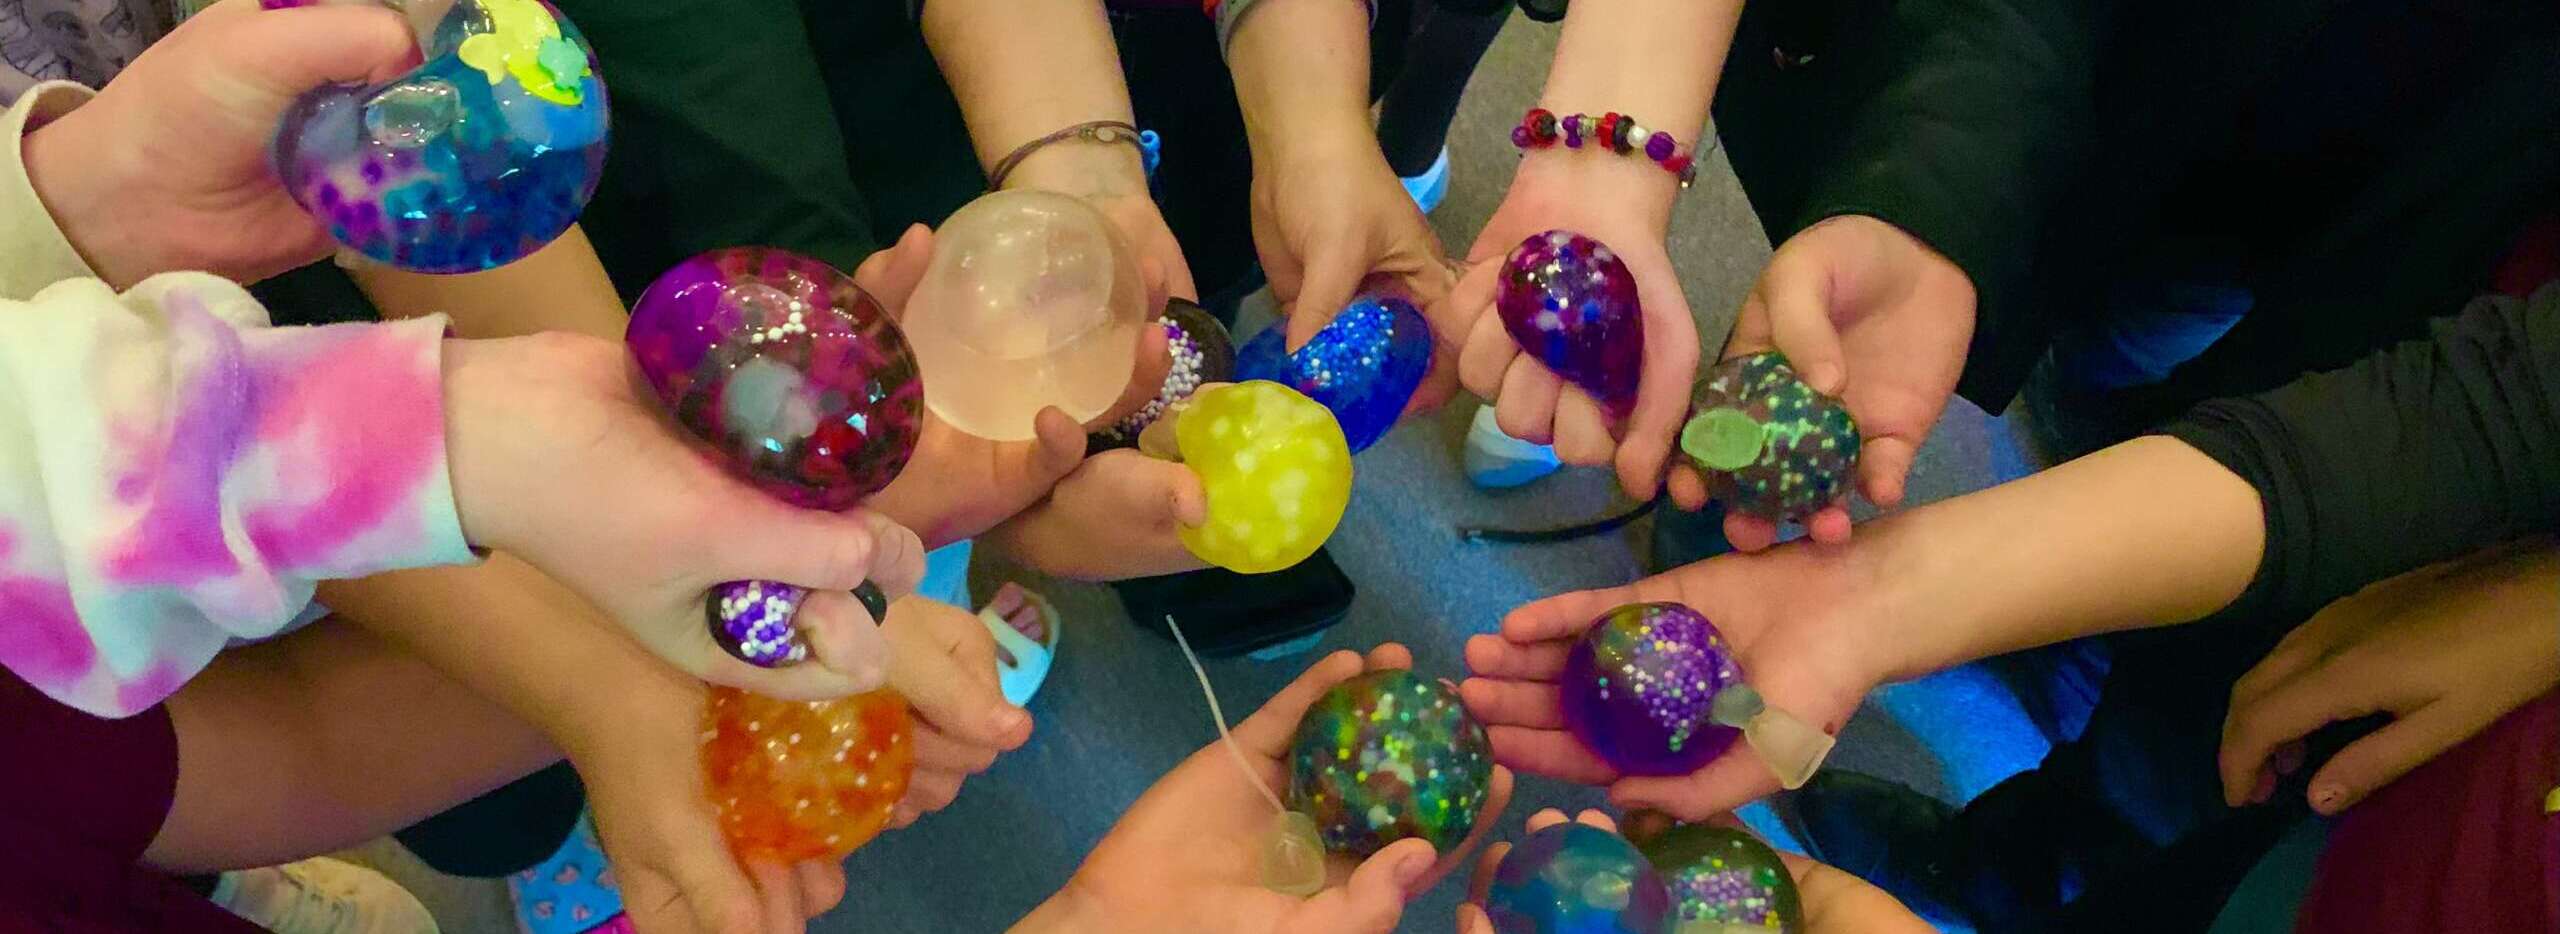 Children holding hand-made stress balls at an afterschool program